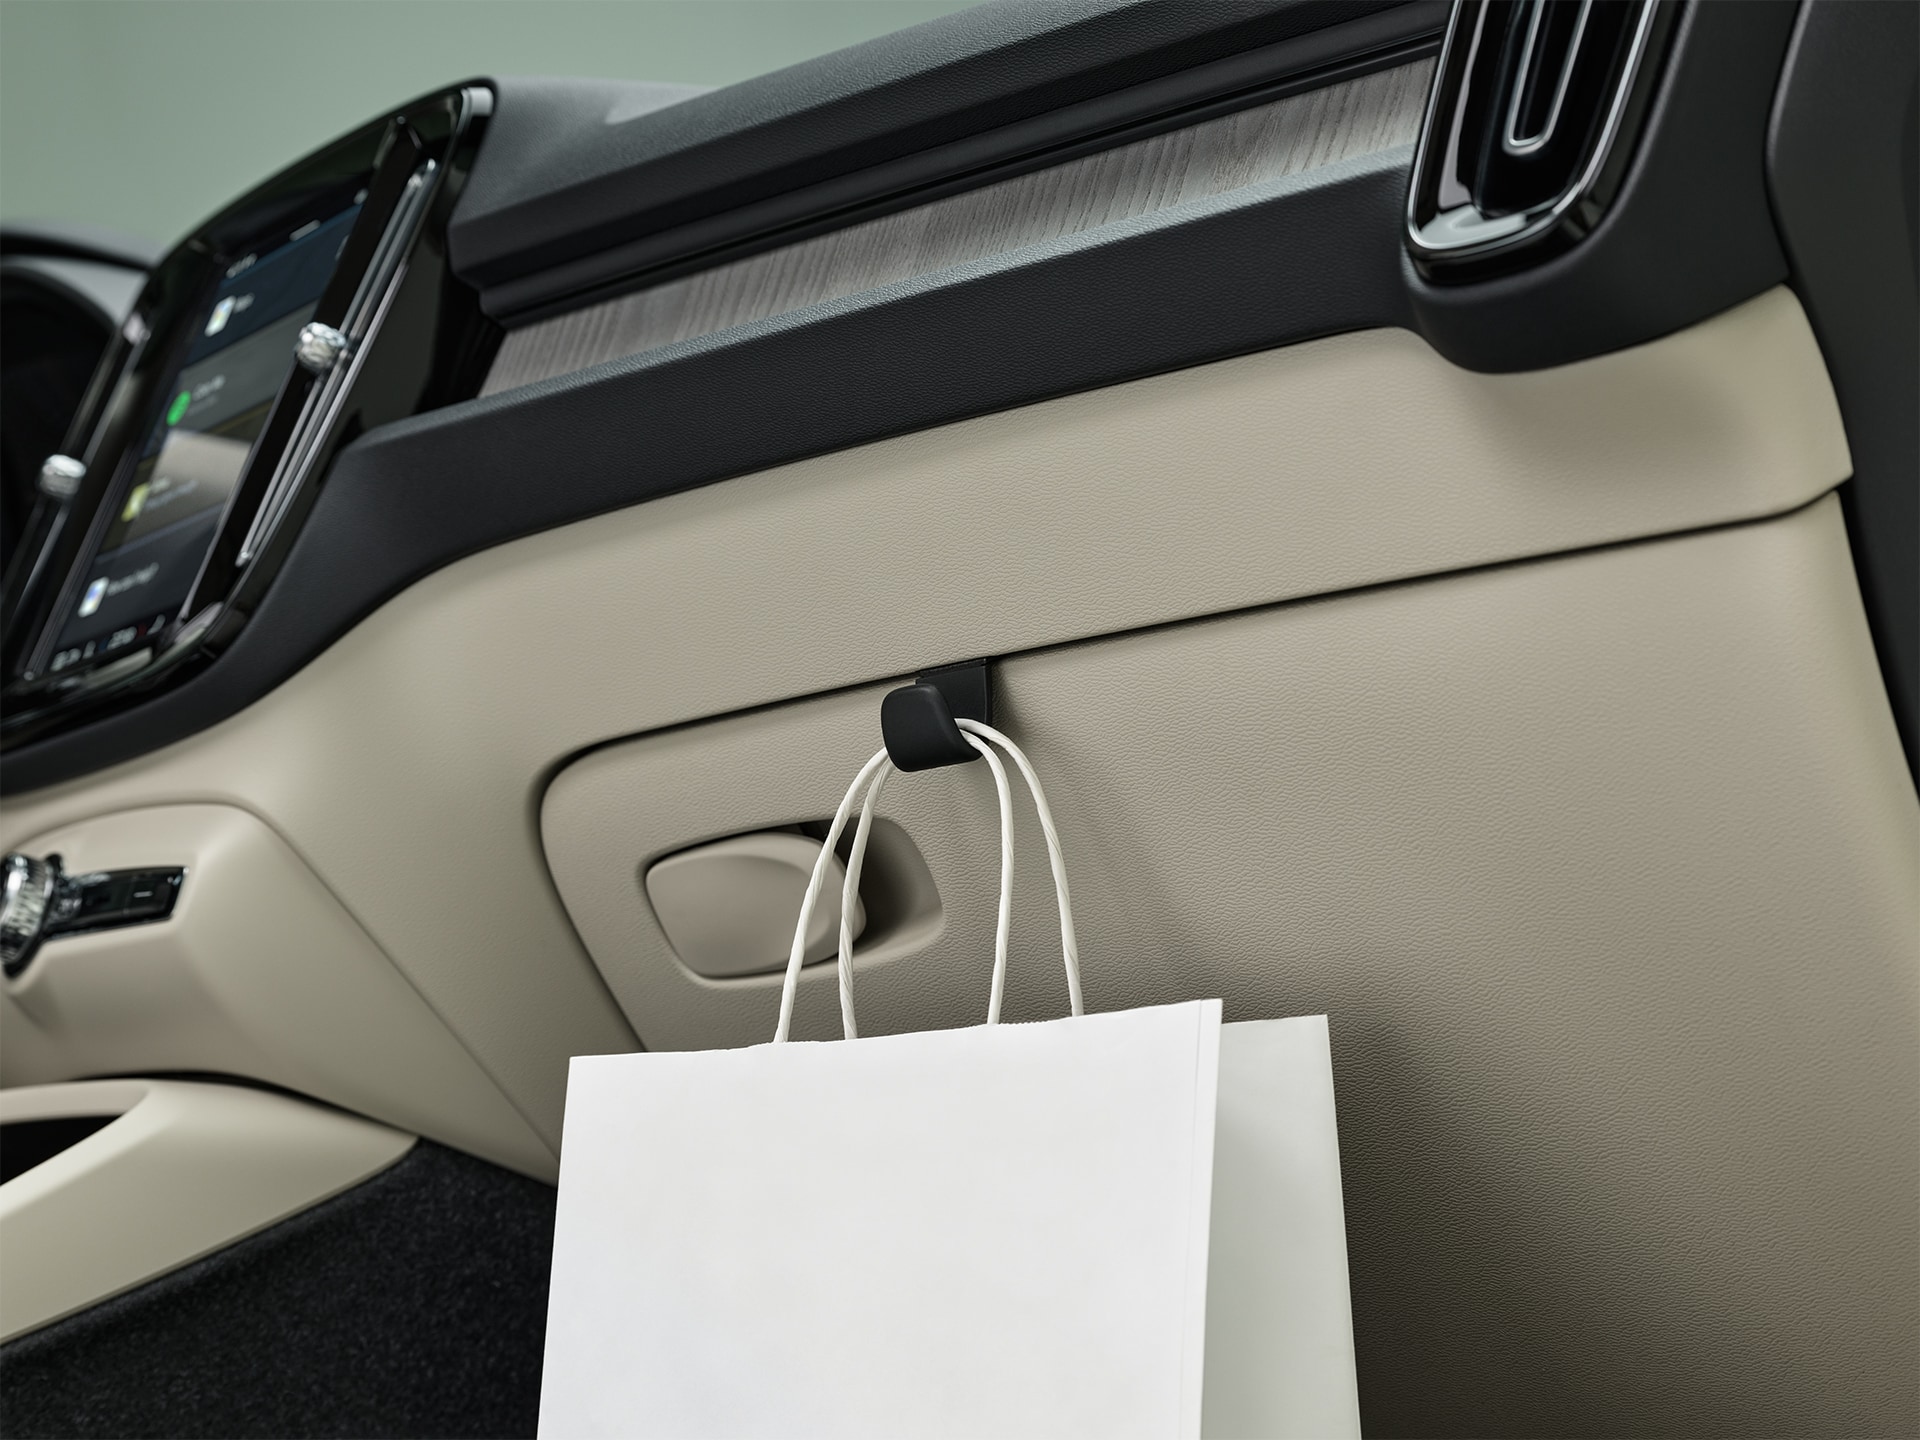 Slimme opbergmogelijkheden en designoplossingen in een Volvo XC40 SUV.